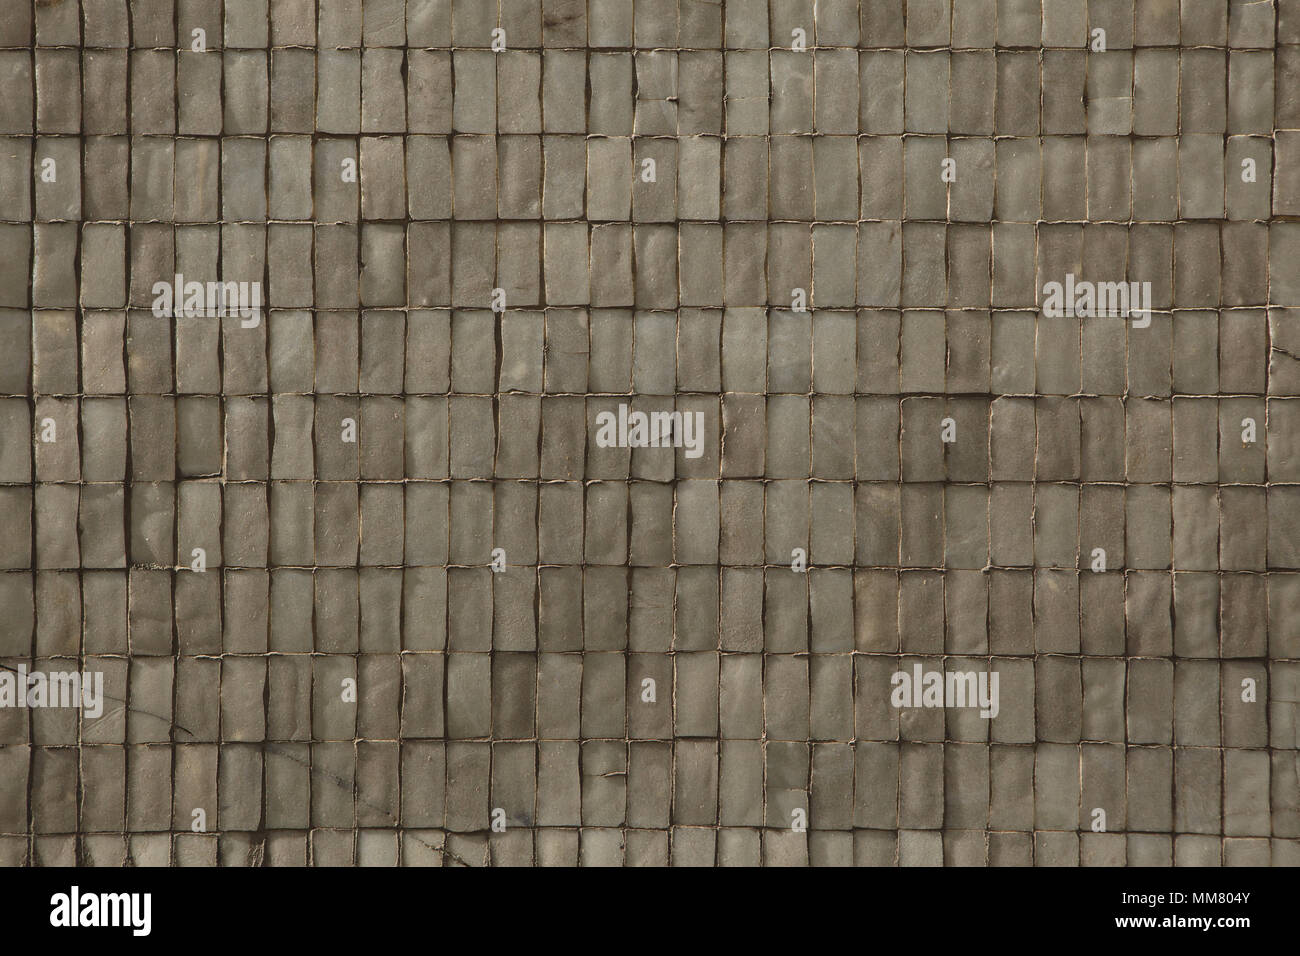 Ceramic facade tiles. Background texture. Stock Photo